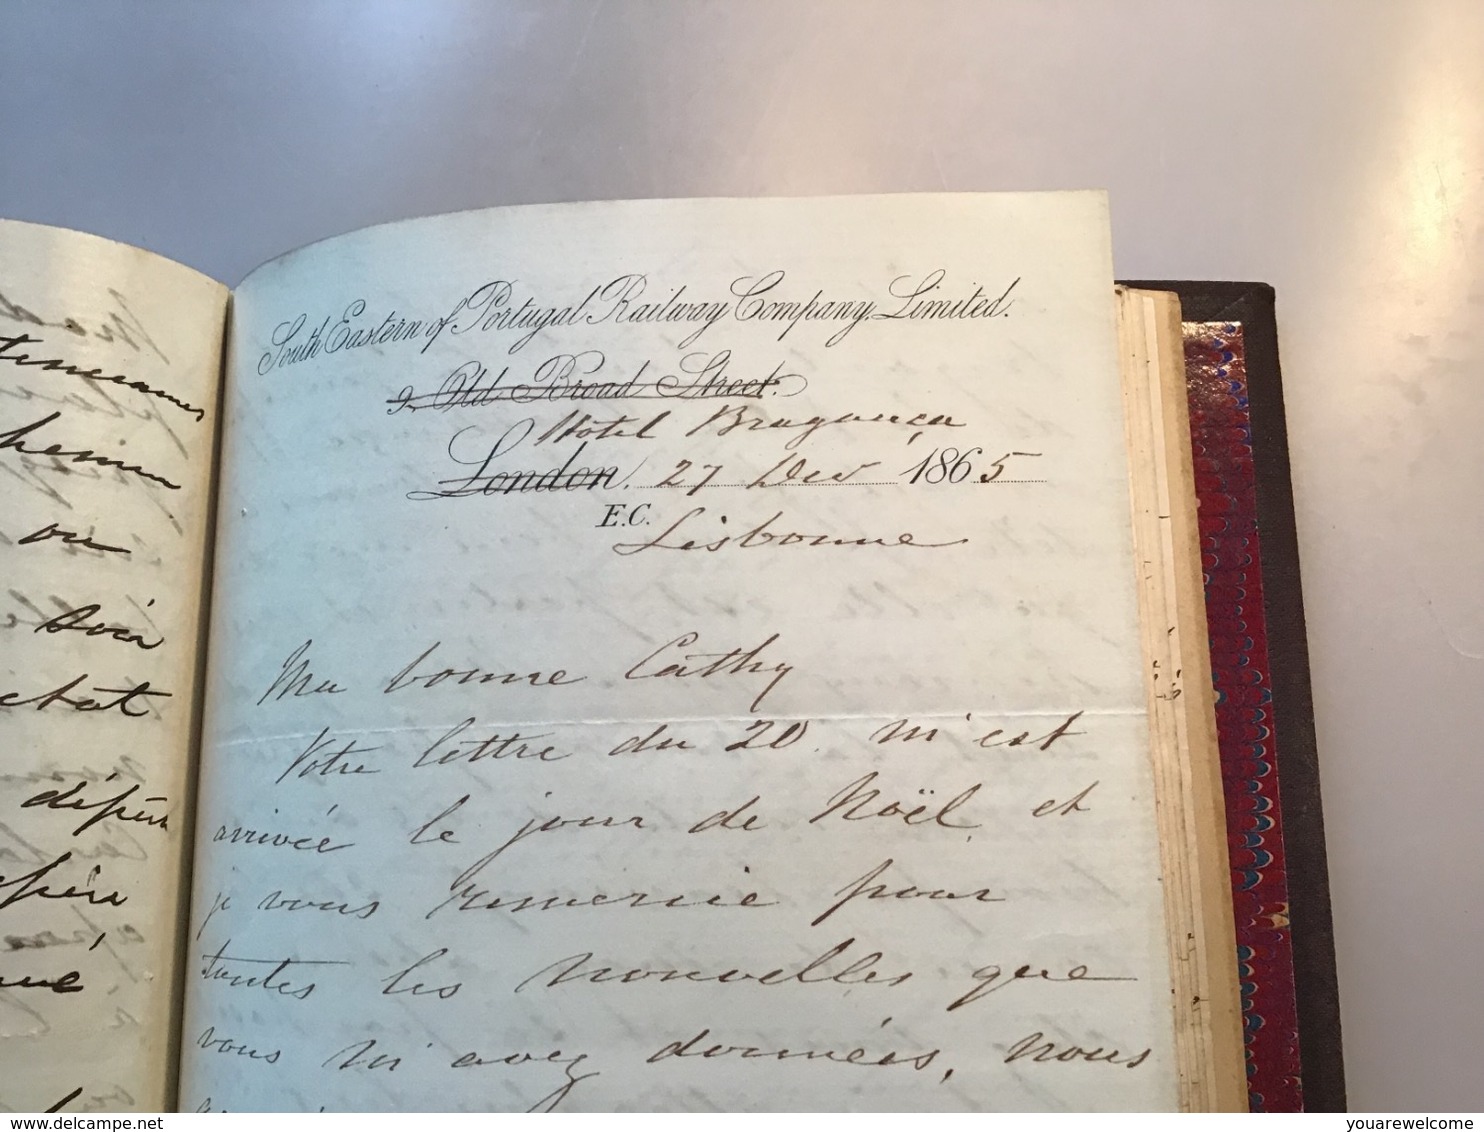 1847-1871 lettres manuscrites de William Mackenzie(railway engineer Liverpool London Brighton Paris Portugal ferroviaire